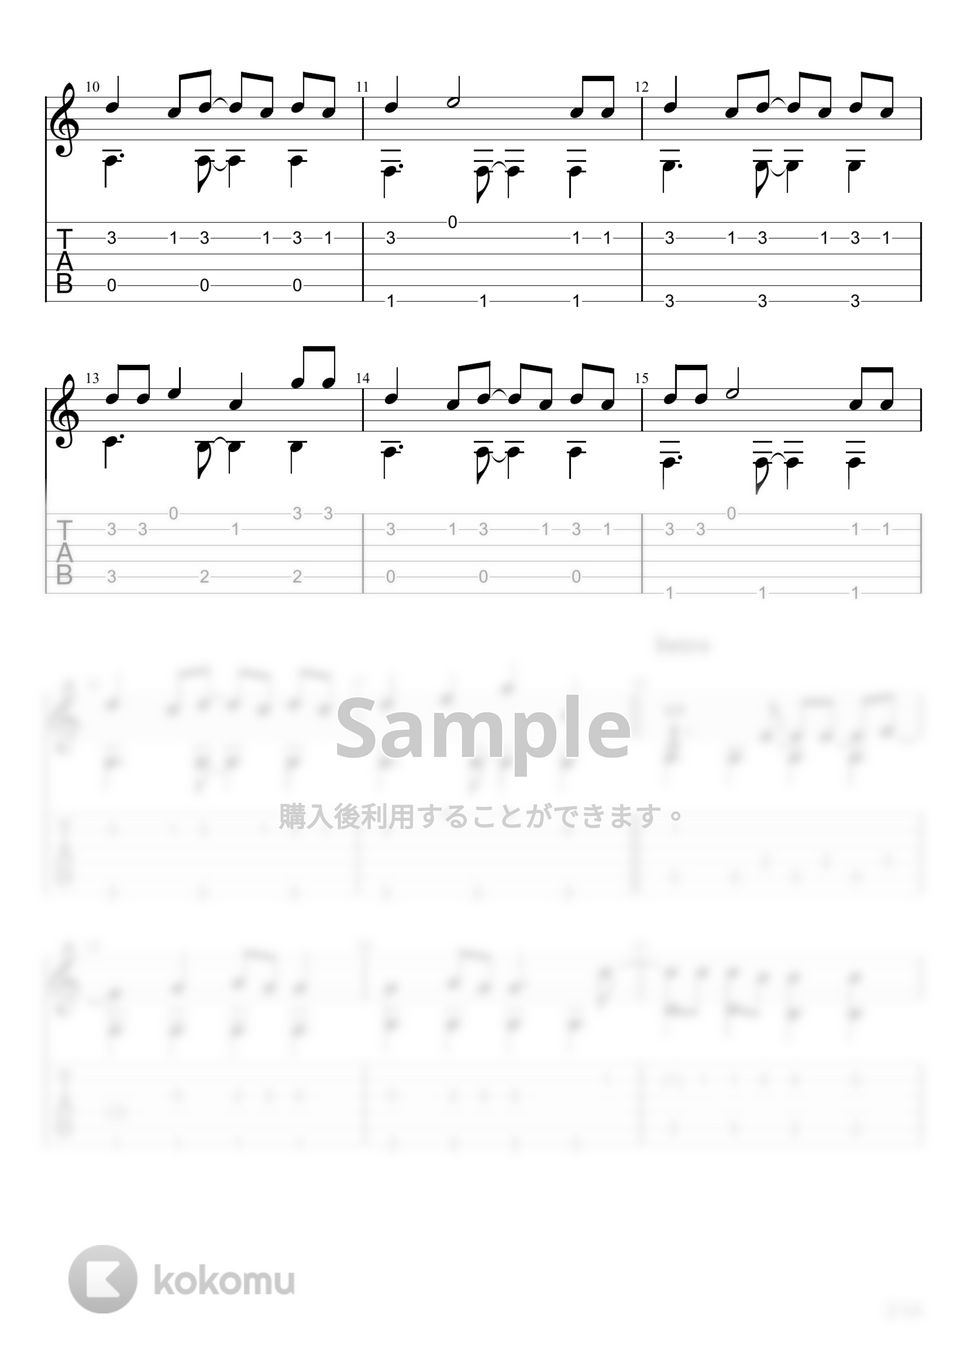 164 - 天ノ弱 (ソロギター) by u3danchou